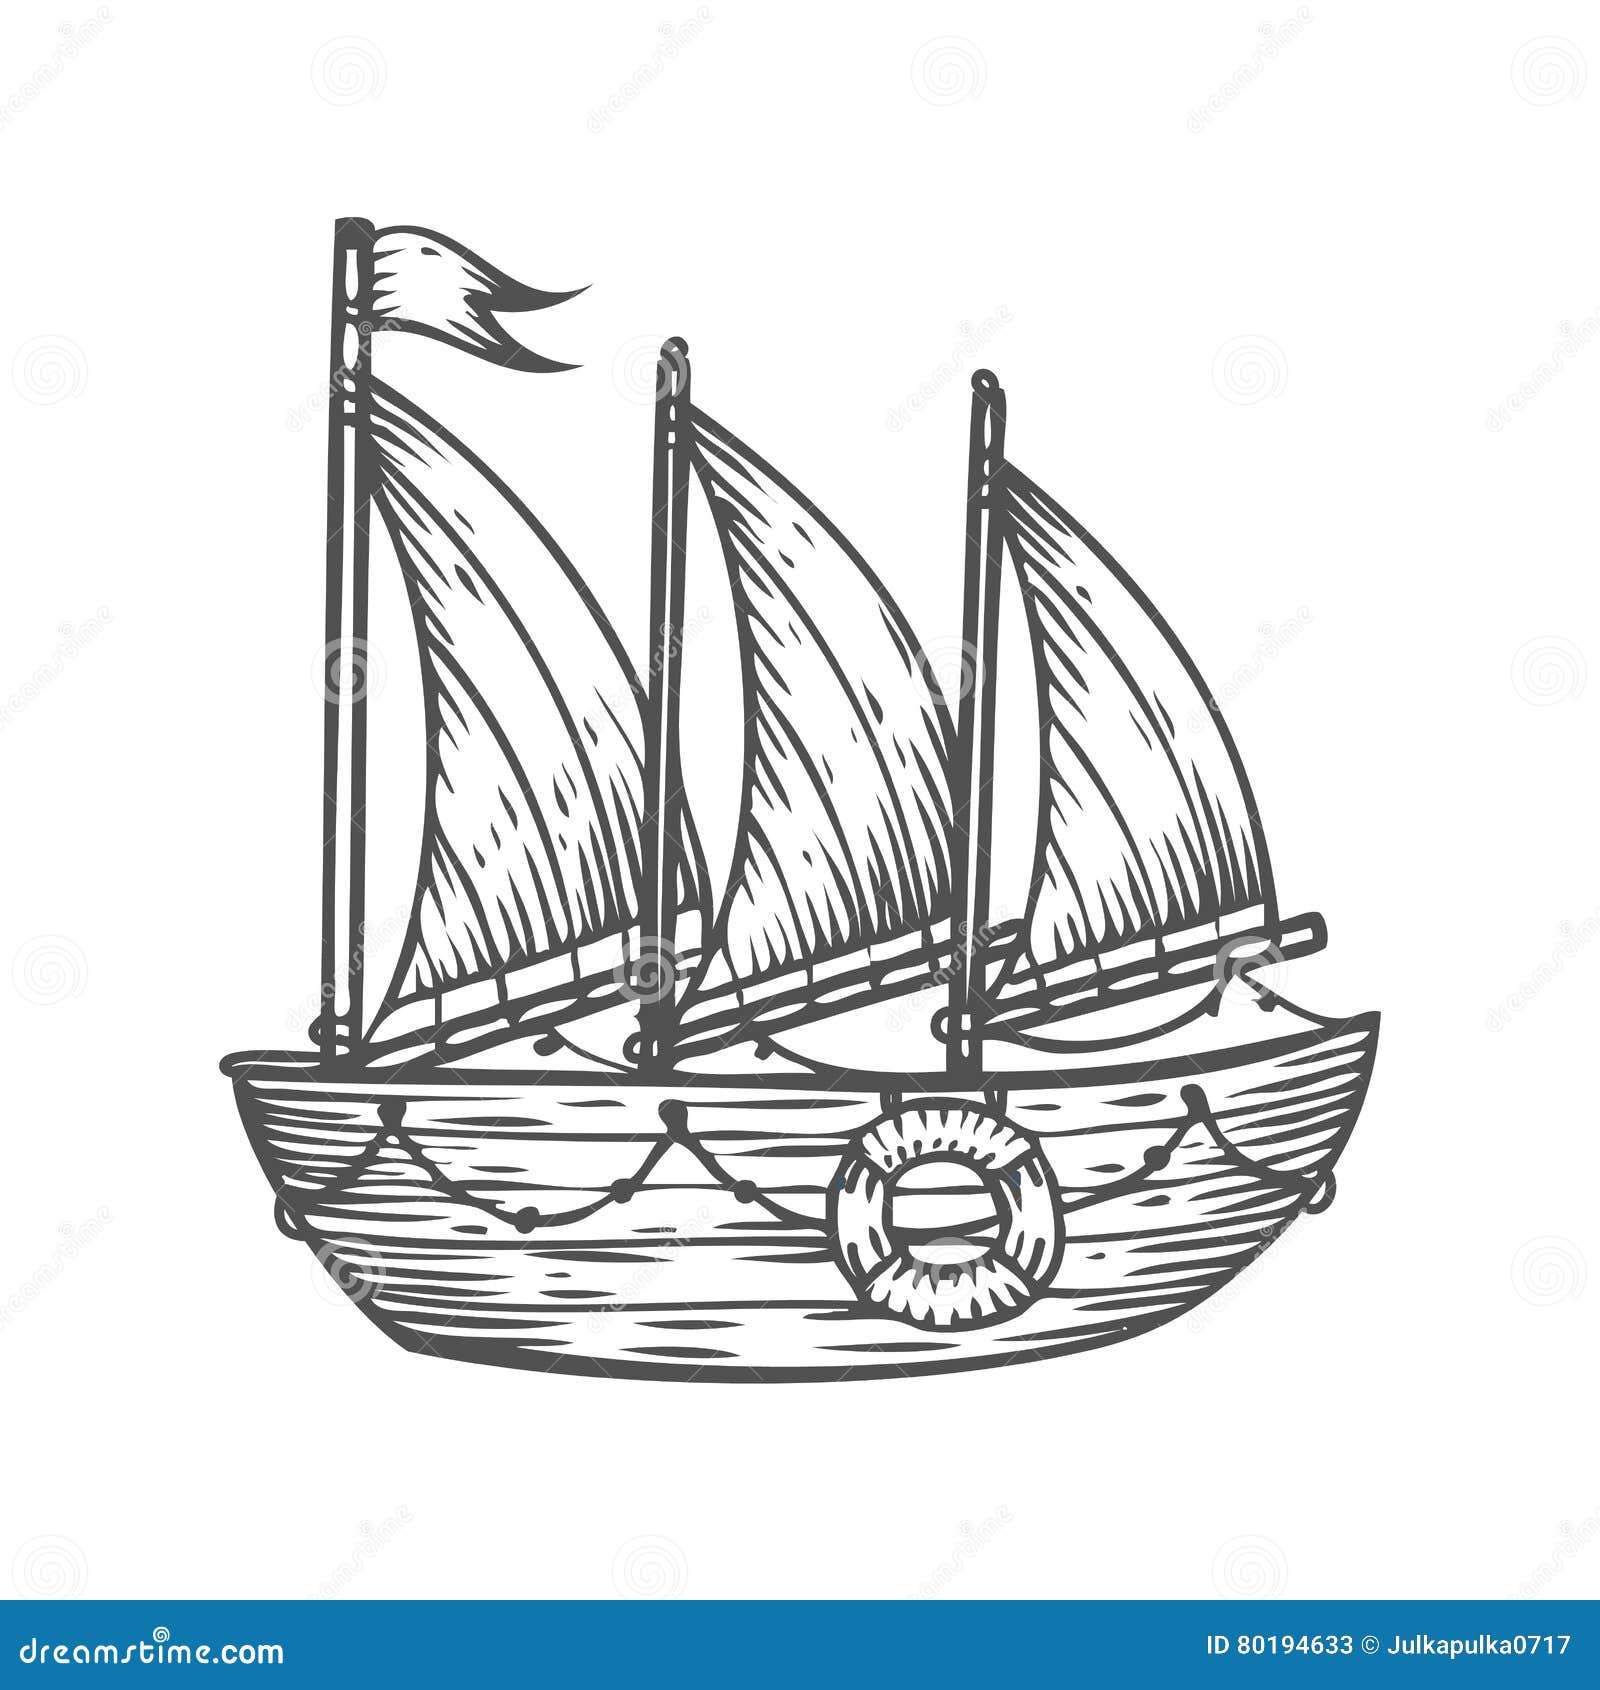 Ship, Boat, Sailboat, Hand Drawn Engraving Sketch Vector 